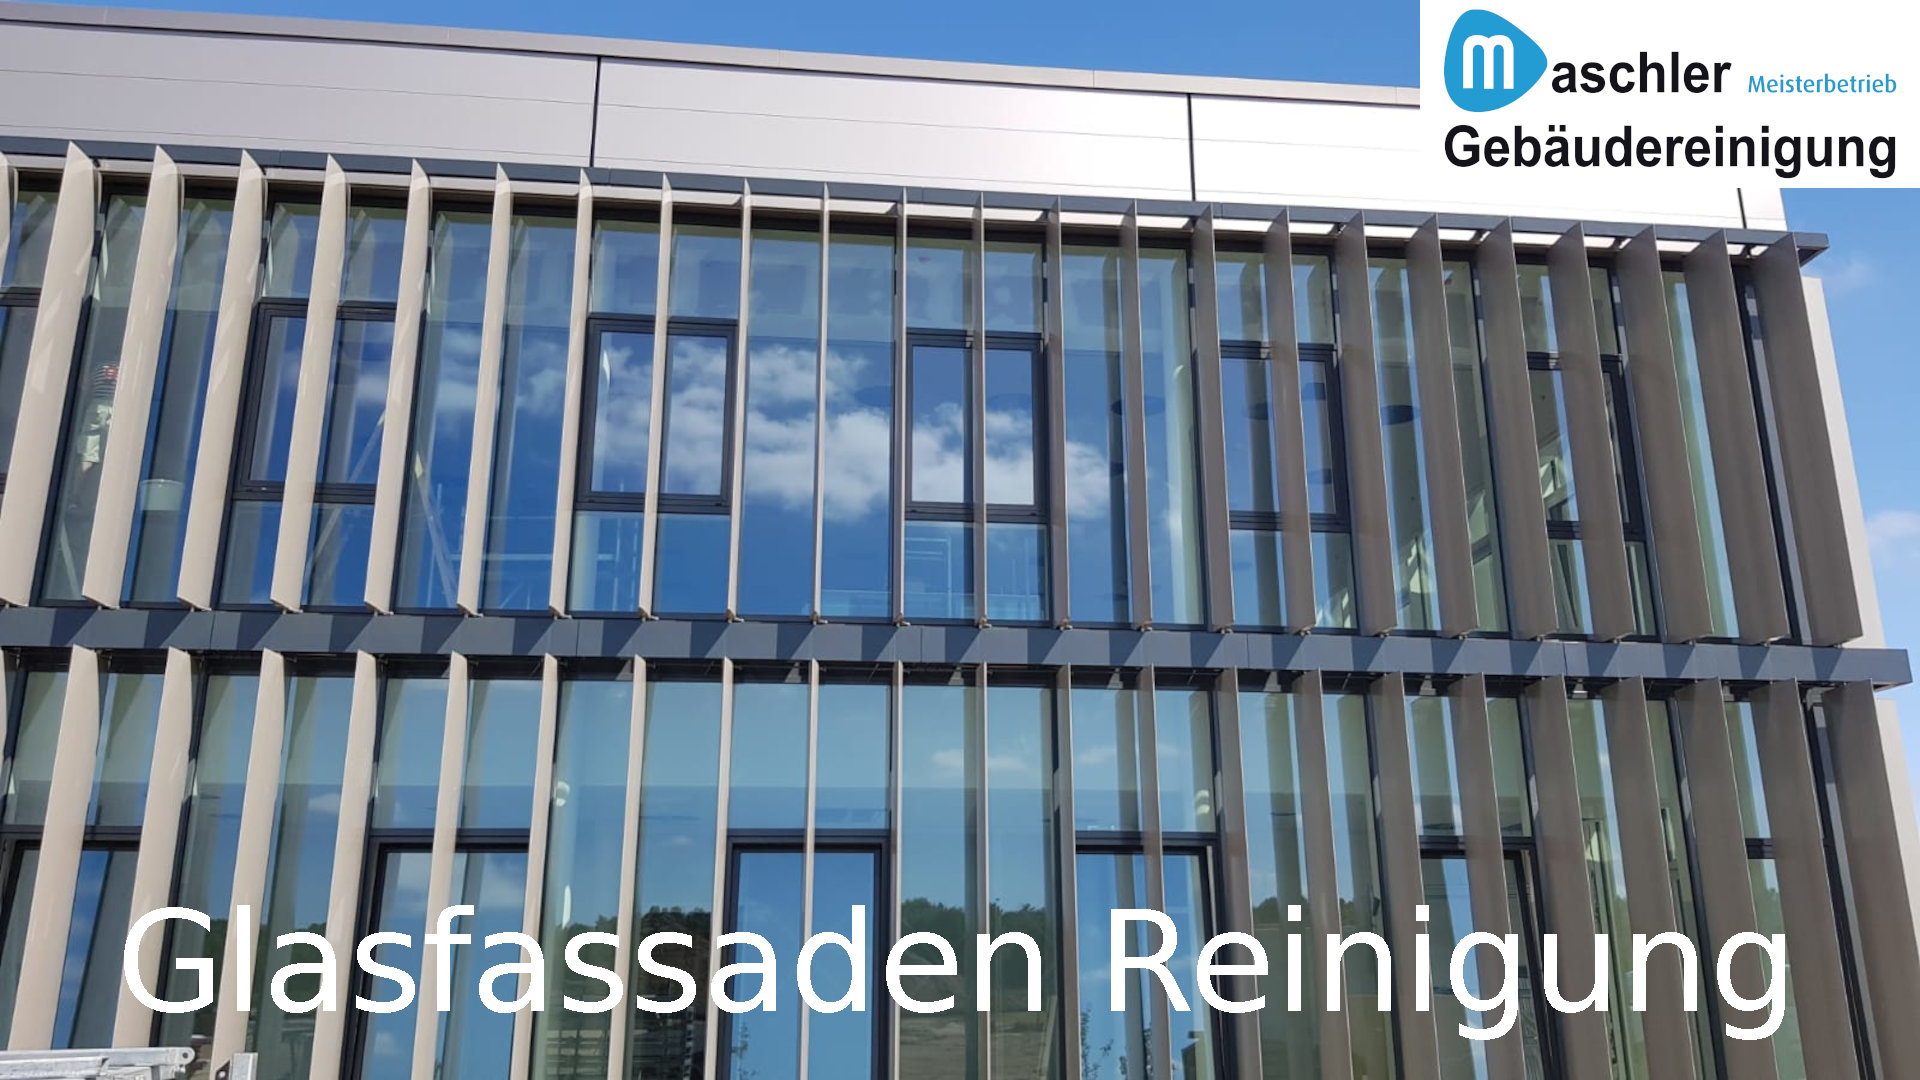 Saubere Glasfassade - Gebäudereinigung Maschler Schwerin